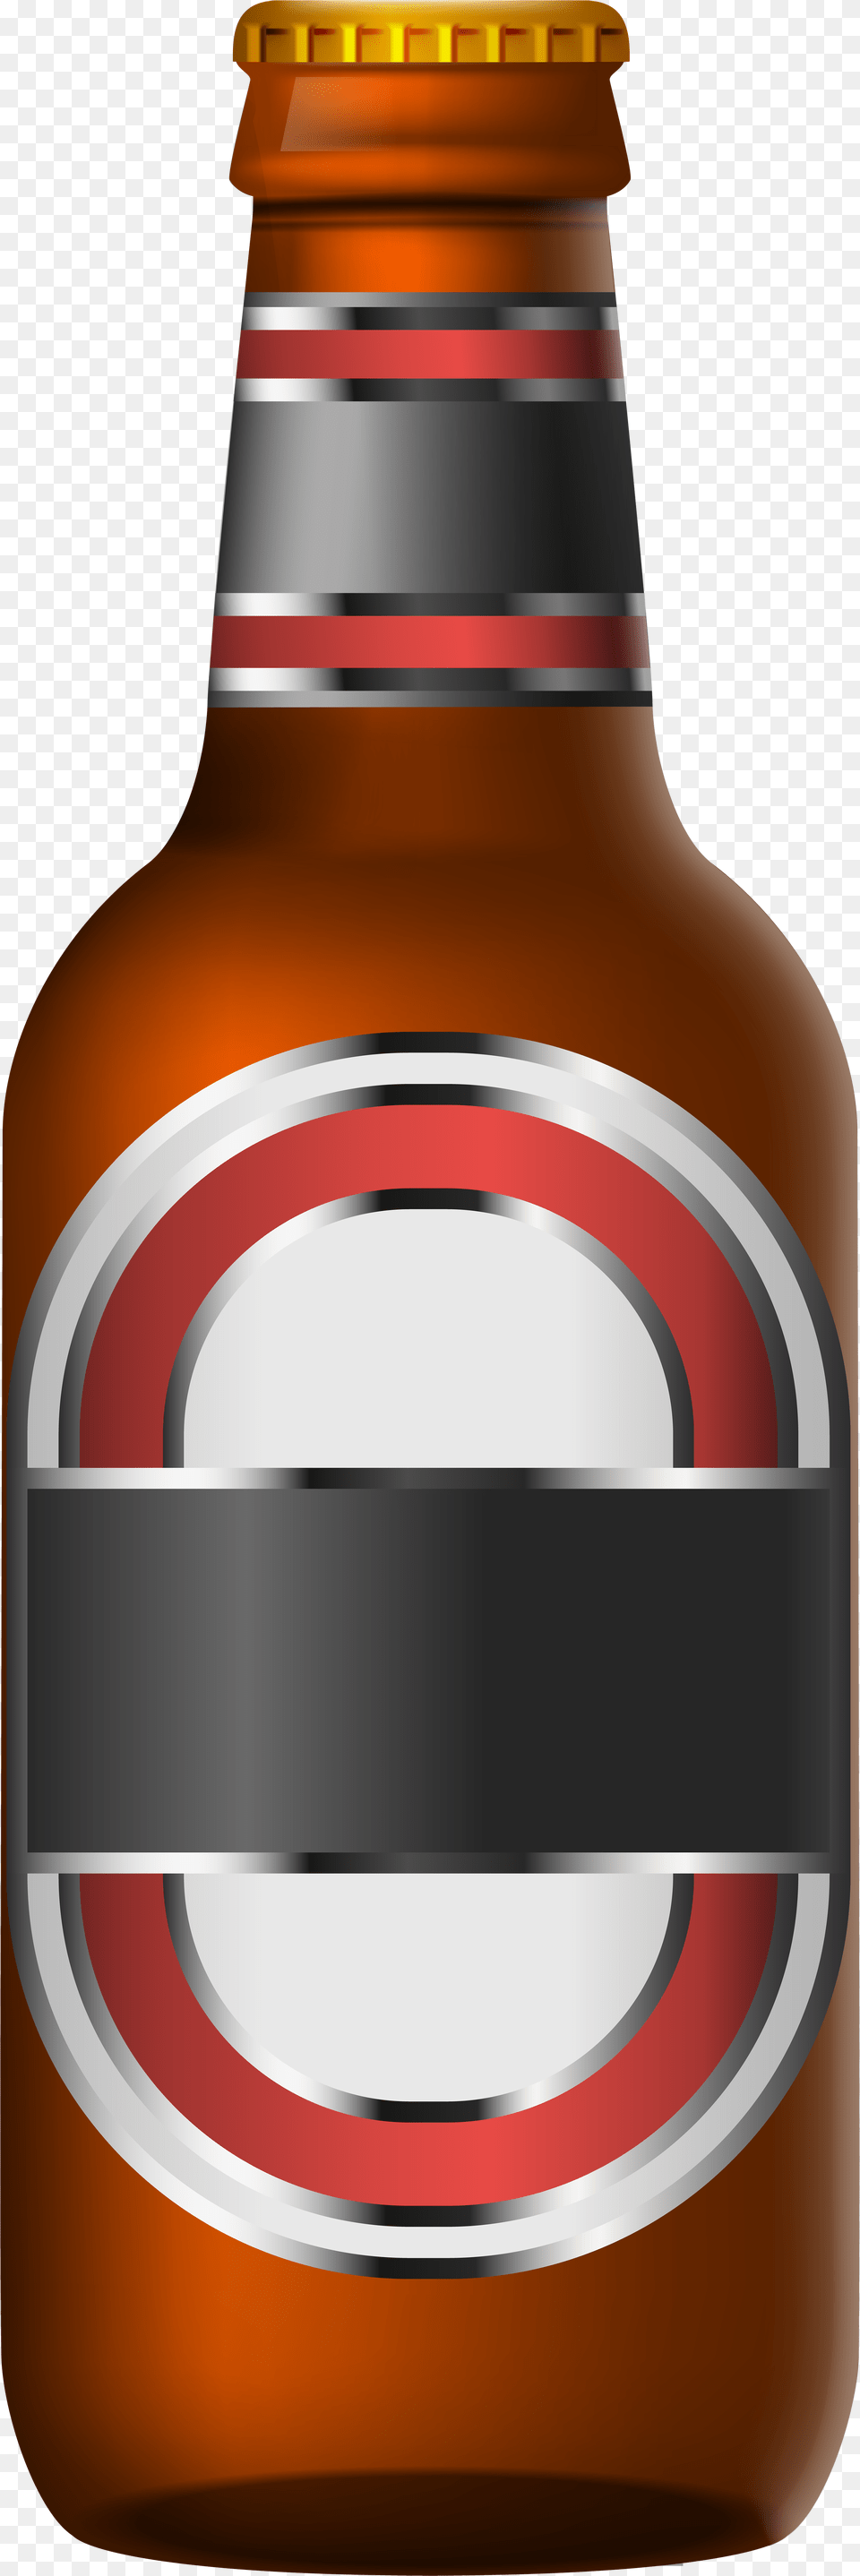 Beer Bottle Beer Bottle Clip Art, Alcohol, Beer Bottle, Beverage, Lager Free Png